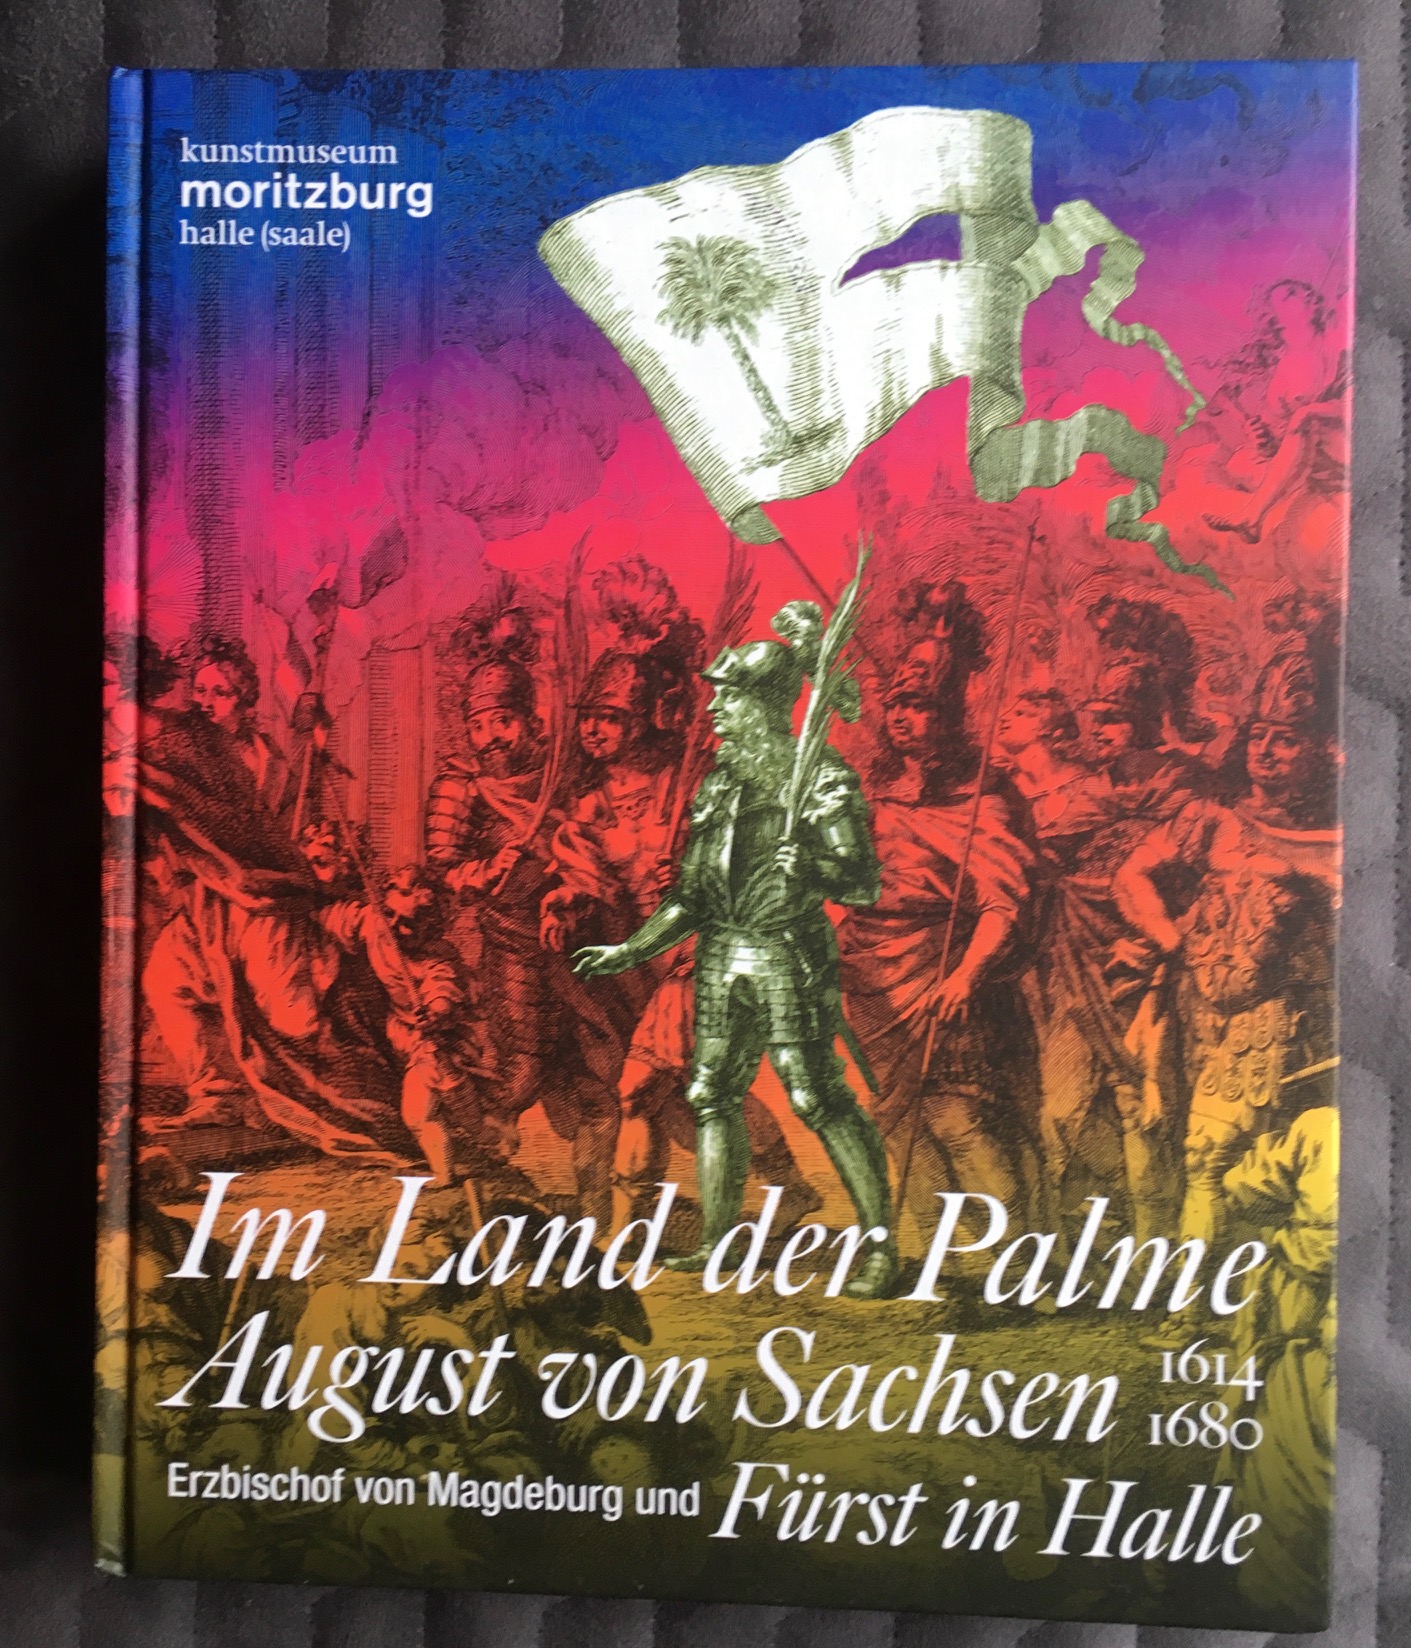 Im Land der Palme. August von Sachsen, Erzbischof von Magdeburg und Fürst in Halle, 1614-1680: Ausstellungskatalog - Schmuhl, Boje E. Hans